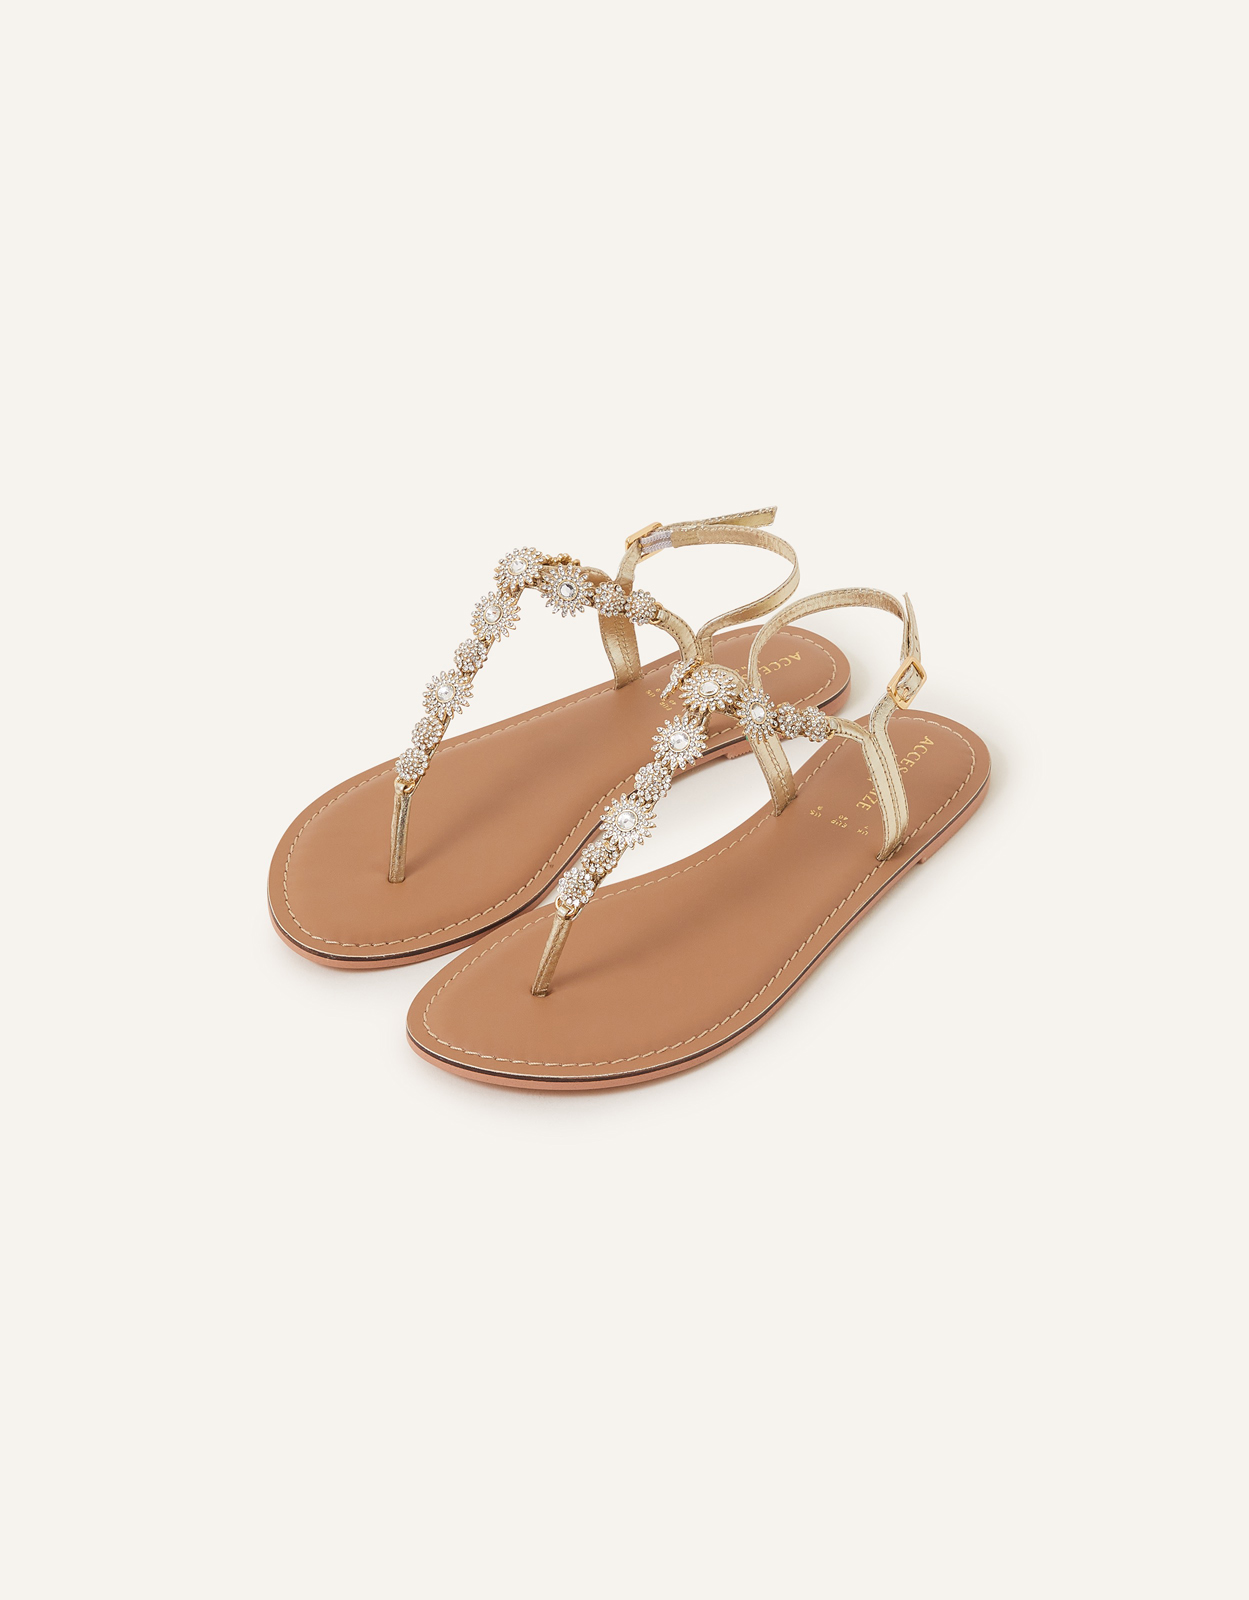 Accessorize Women's Rome Sparkle Sandals Gold, Size: 41